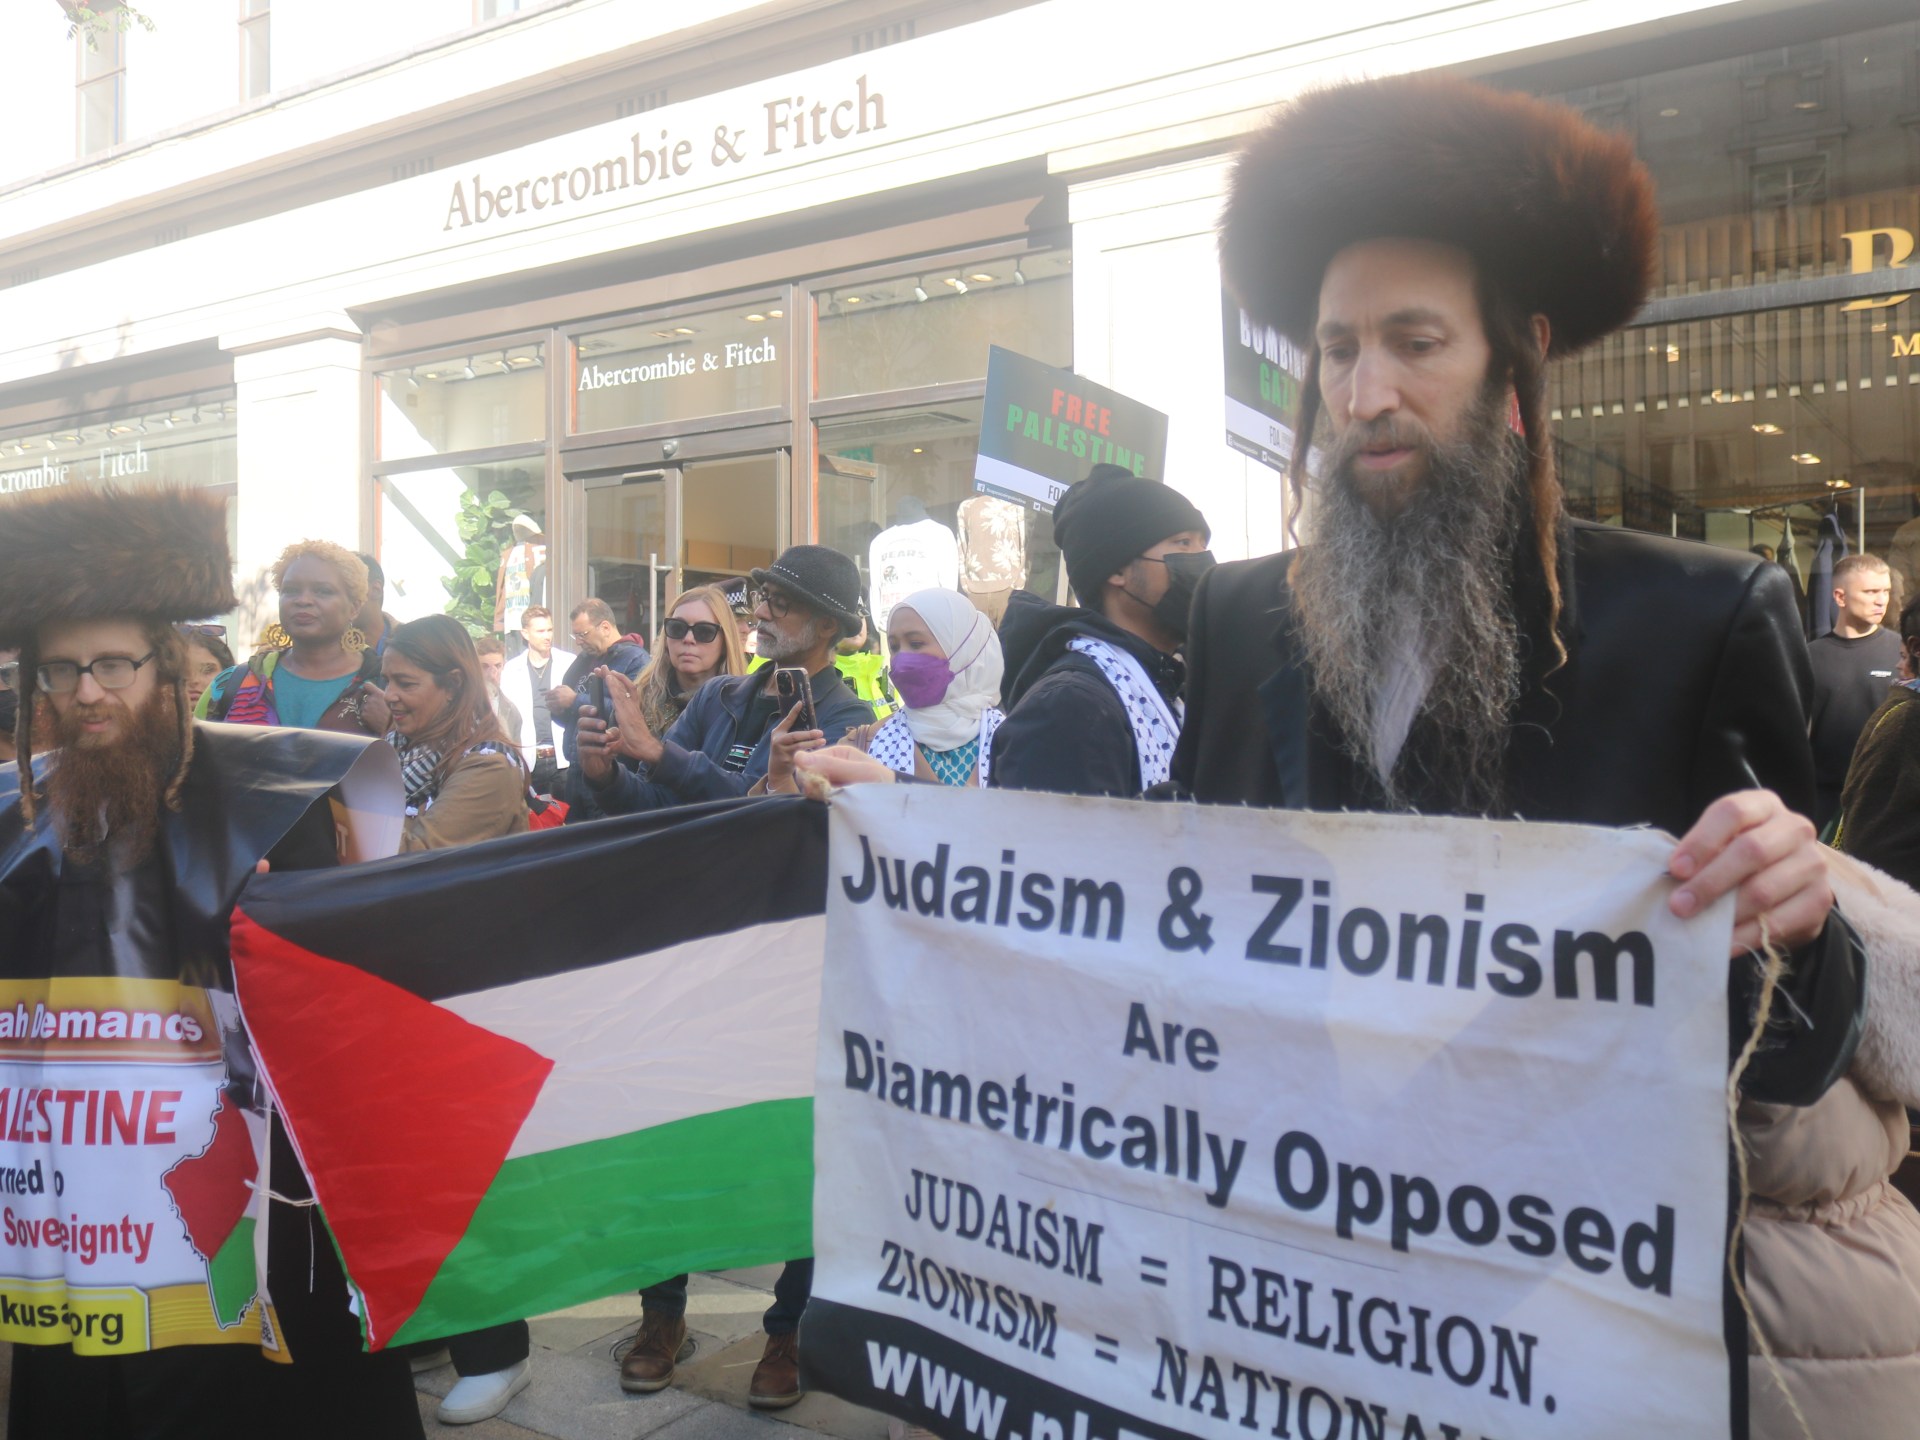 بمشاركة عمدة لندن ويهود.. هكذا تحدت مسيرة داعمة لغزة تهديدات الداخلية | سياسة – البوكس نيوز